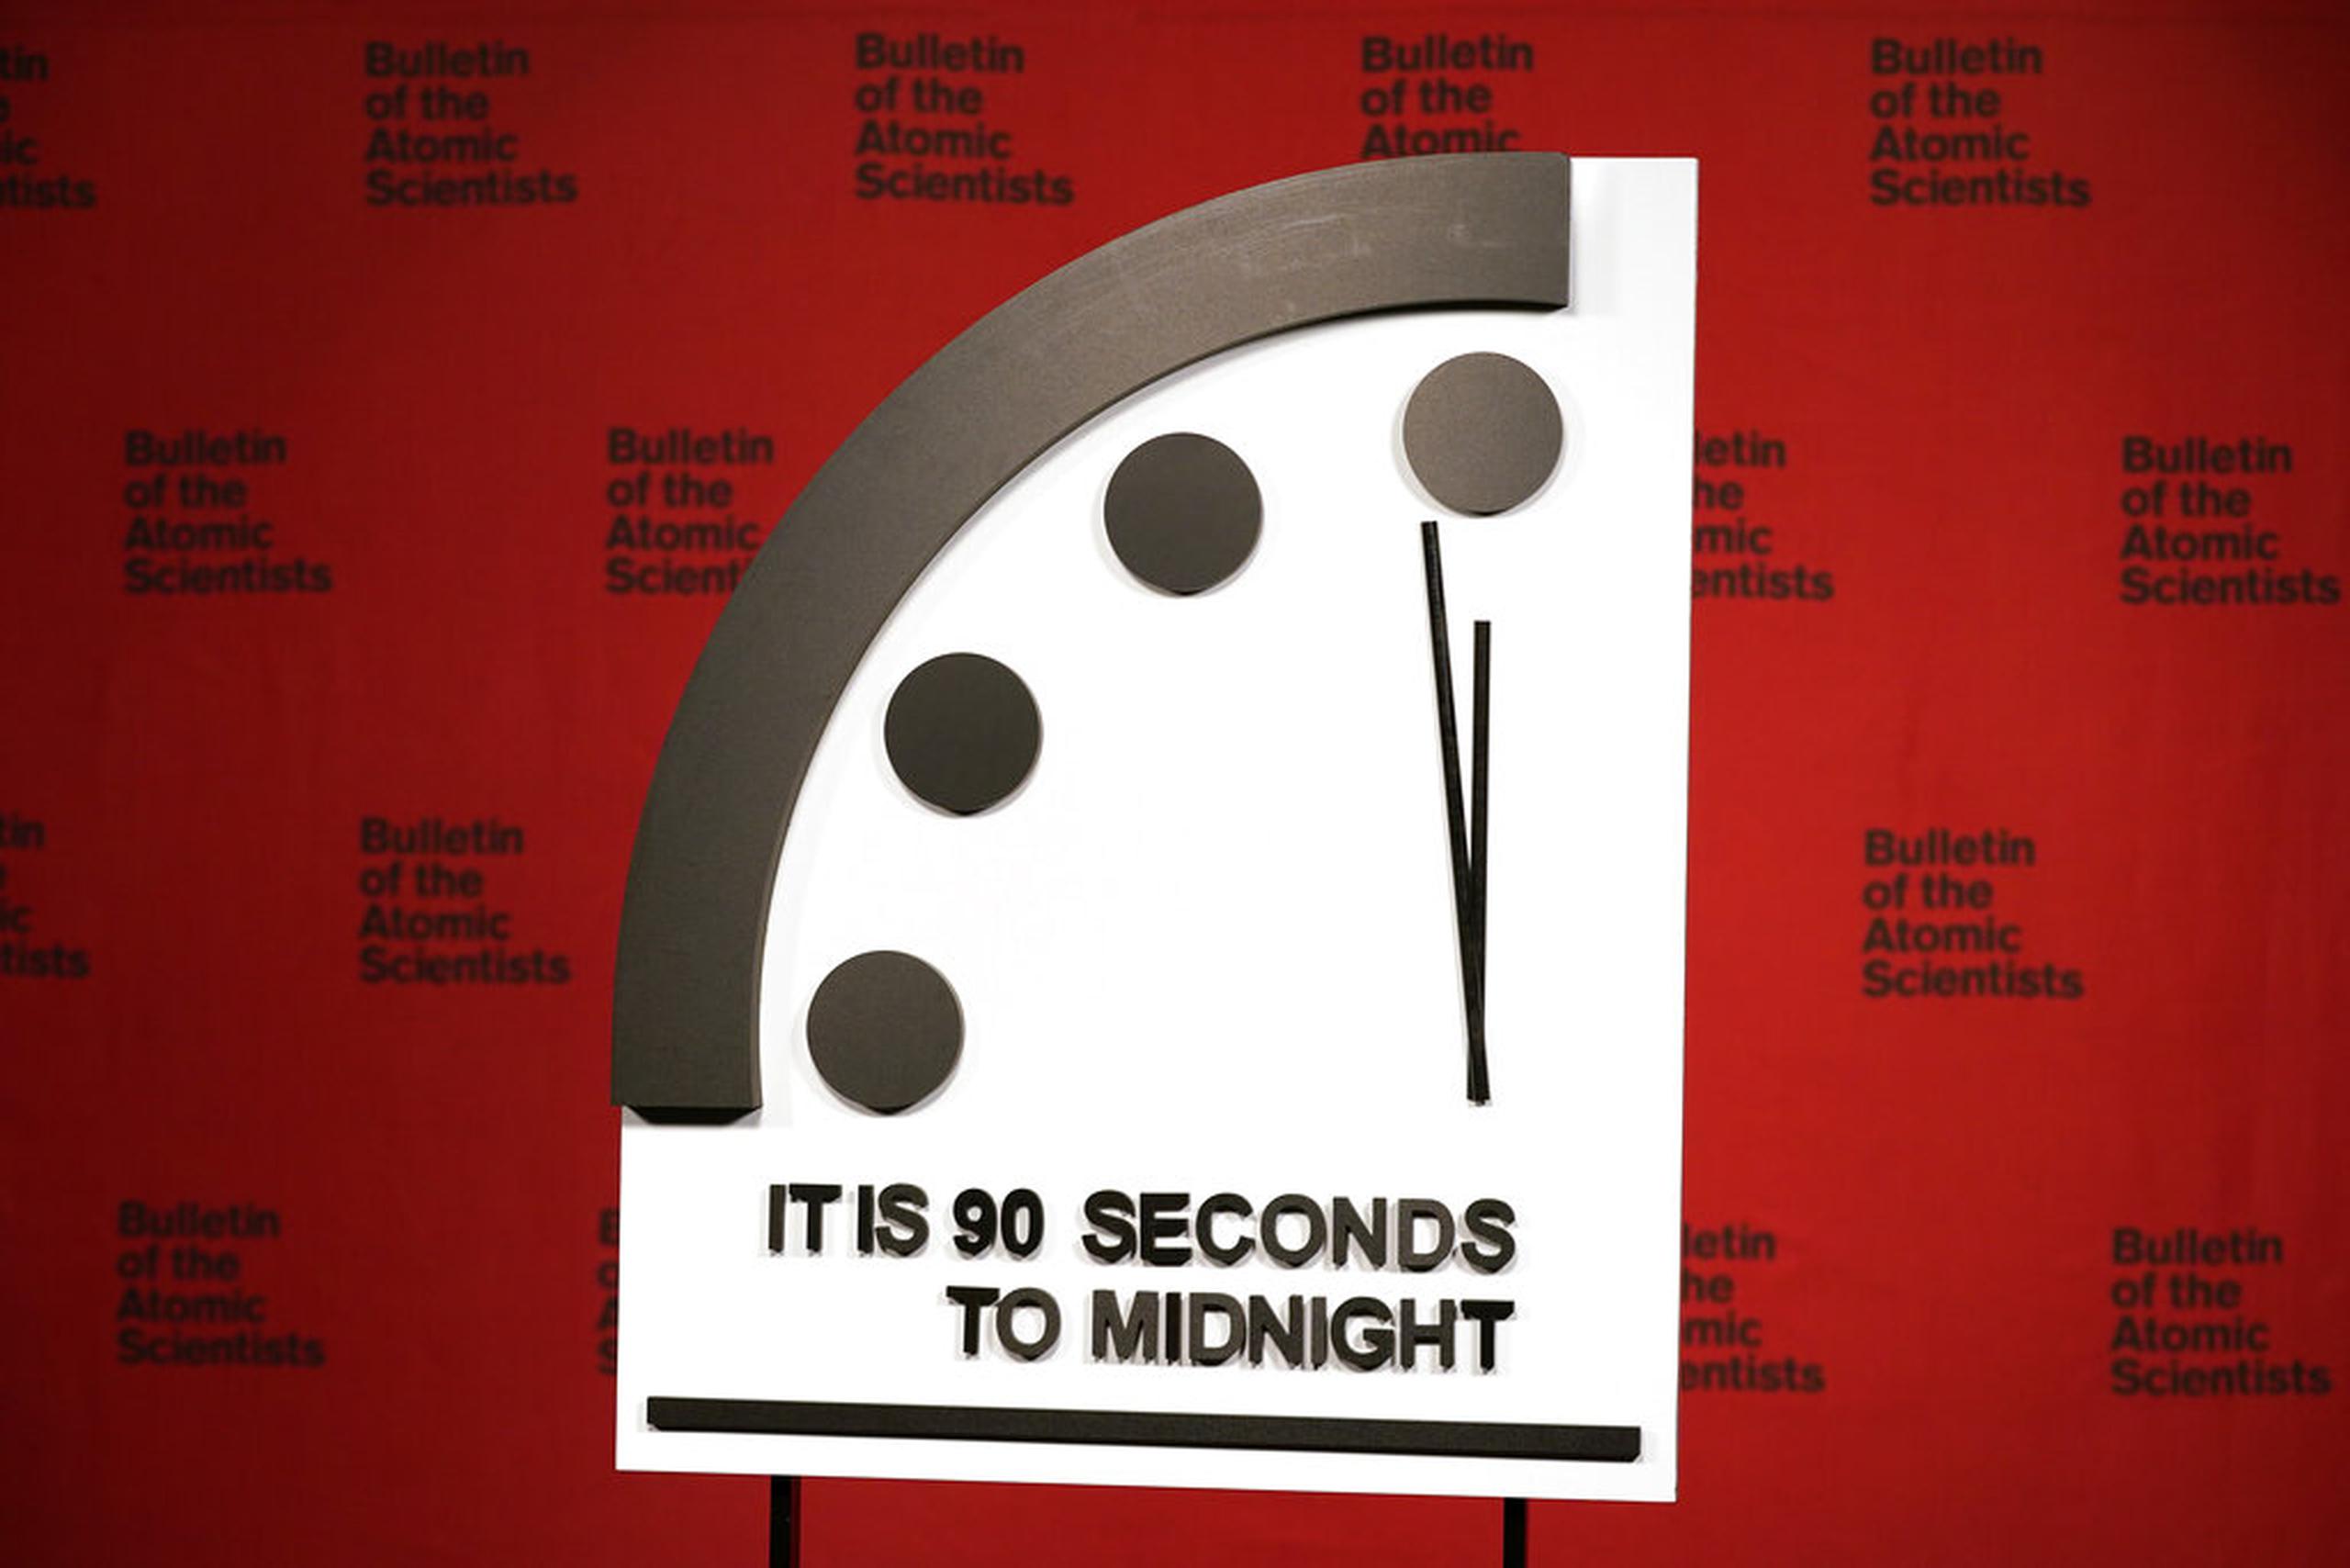 El Reloj del Juicio Final, o "Doomsday Clock" en inglés, fue creado en el 1947.